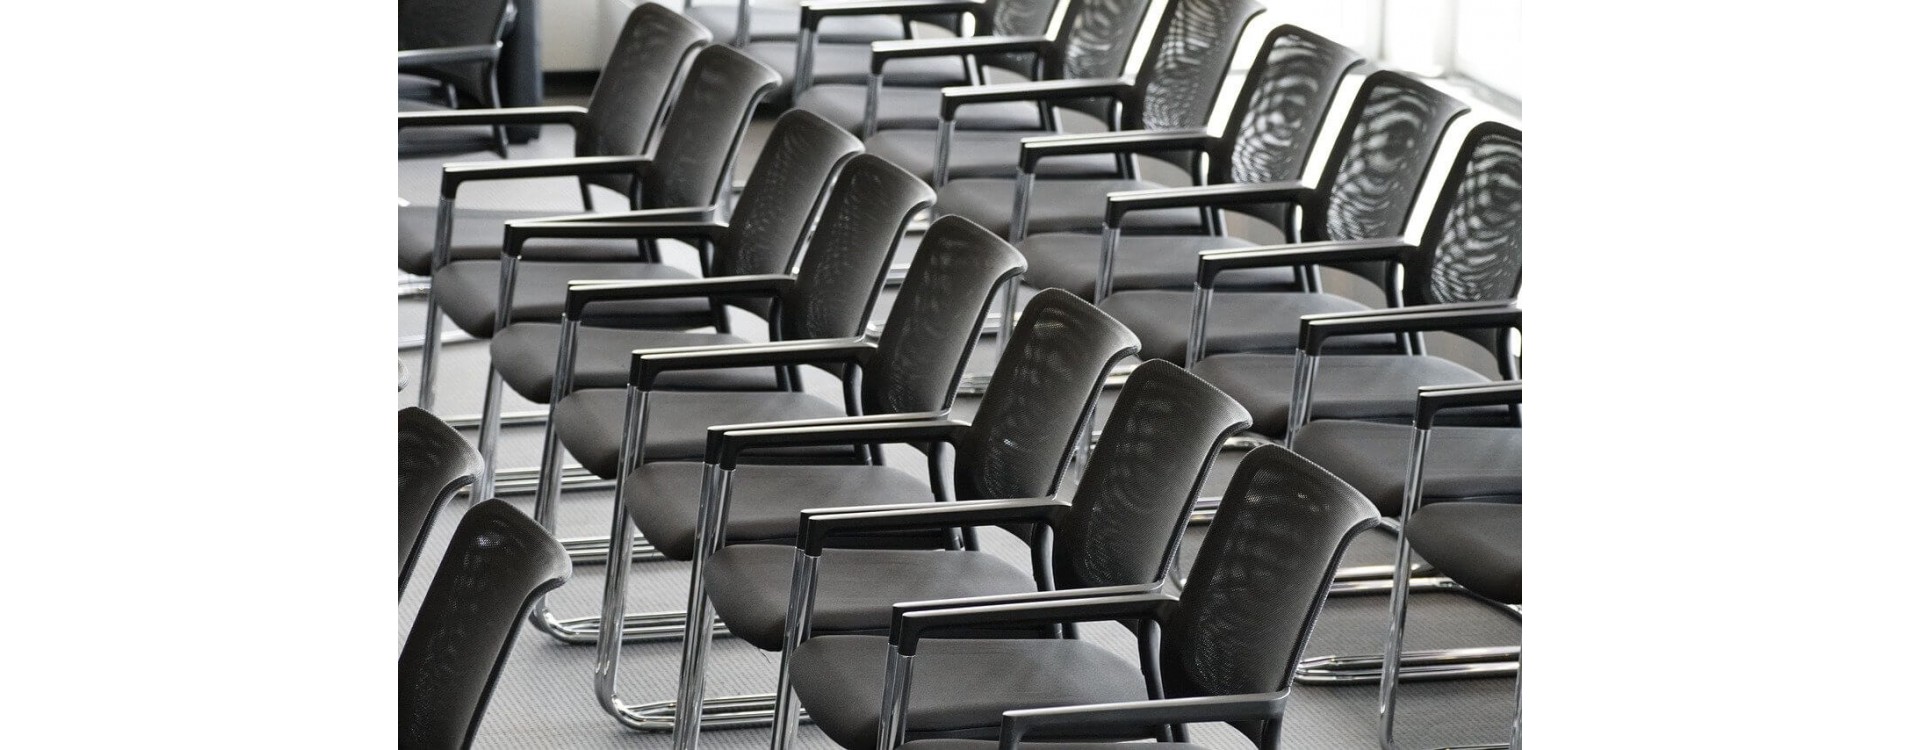 Jakie krzesła do sali konferencyjnej wybrać?